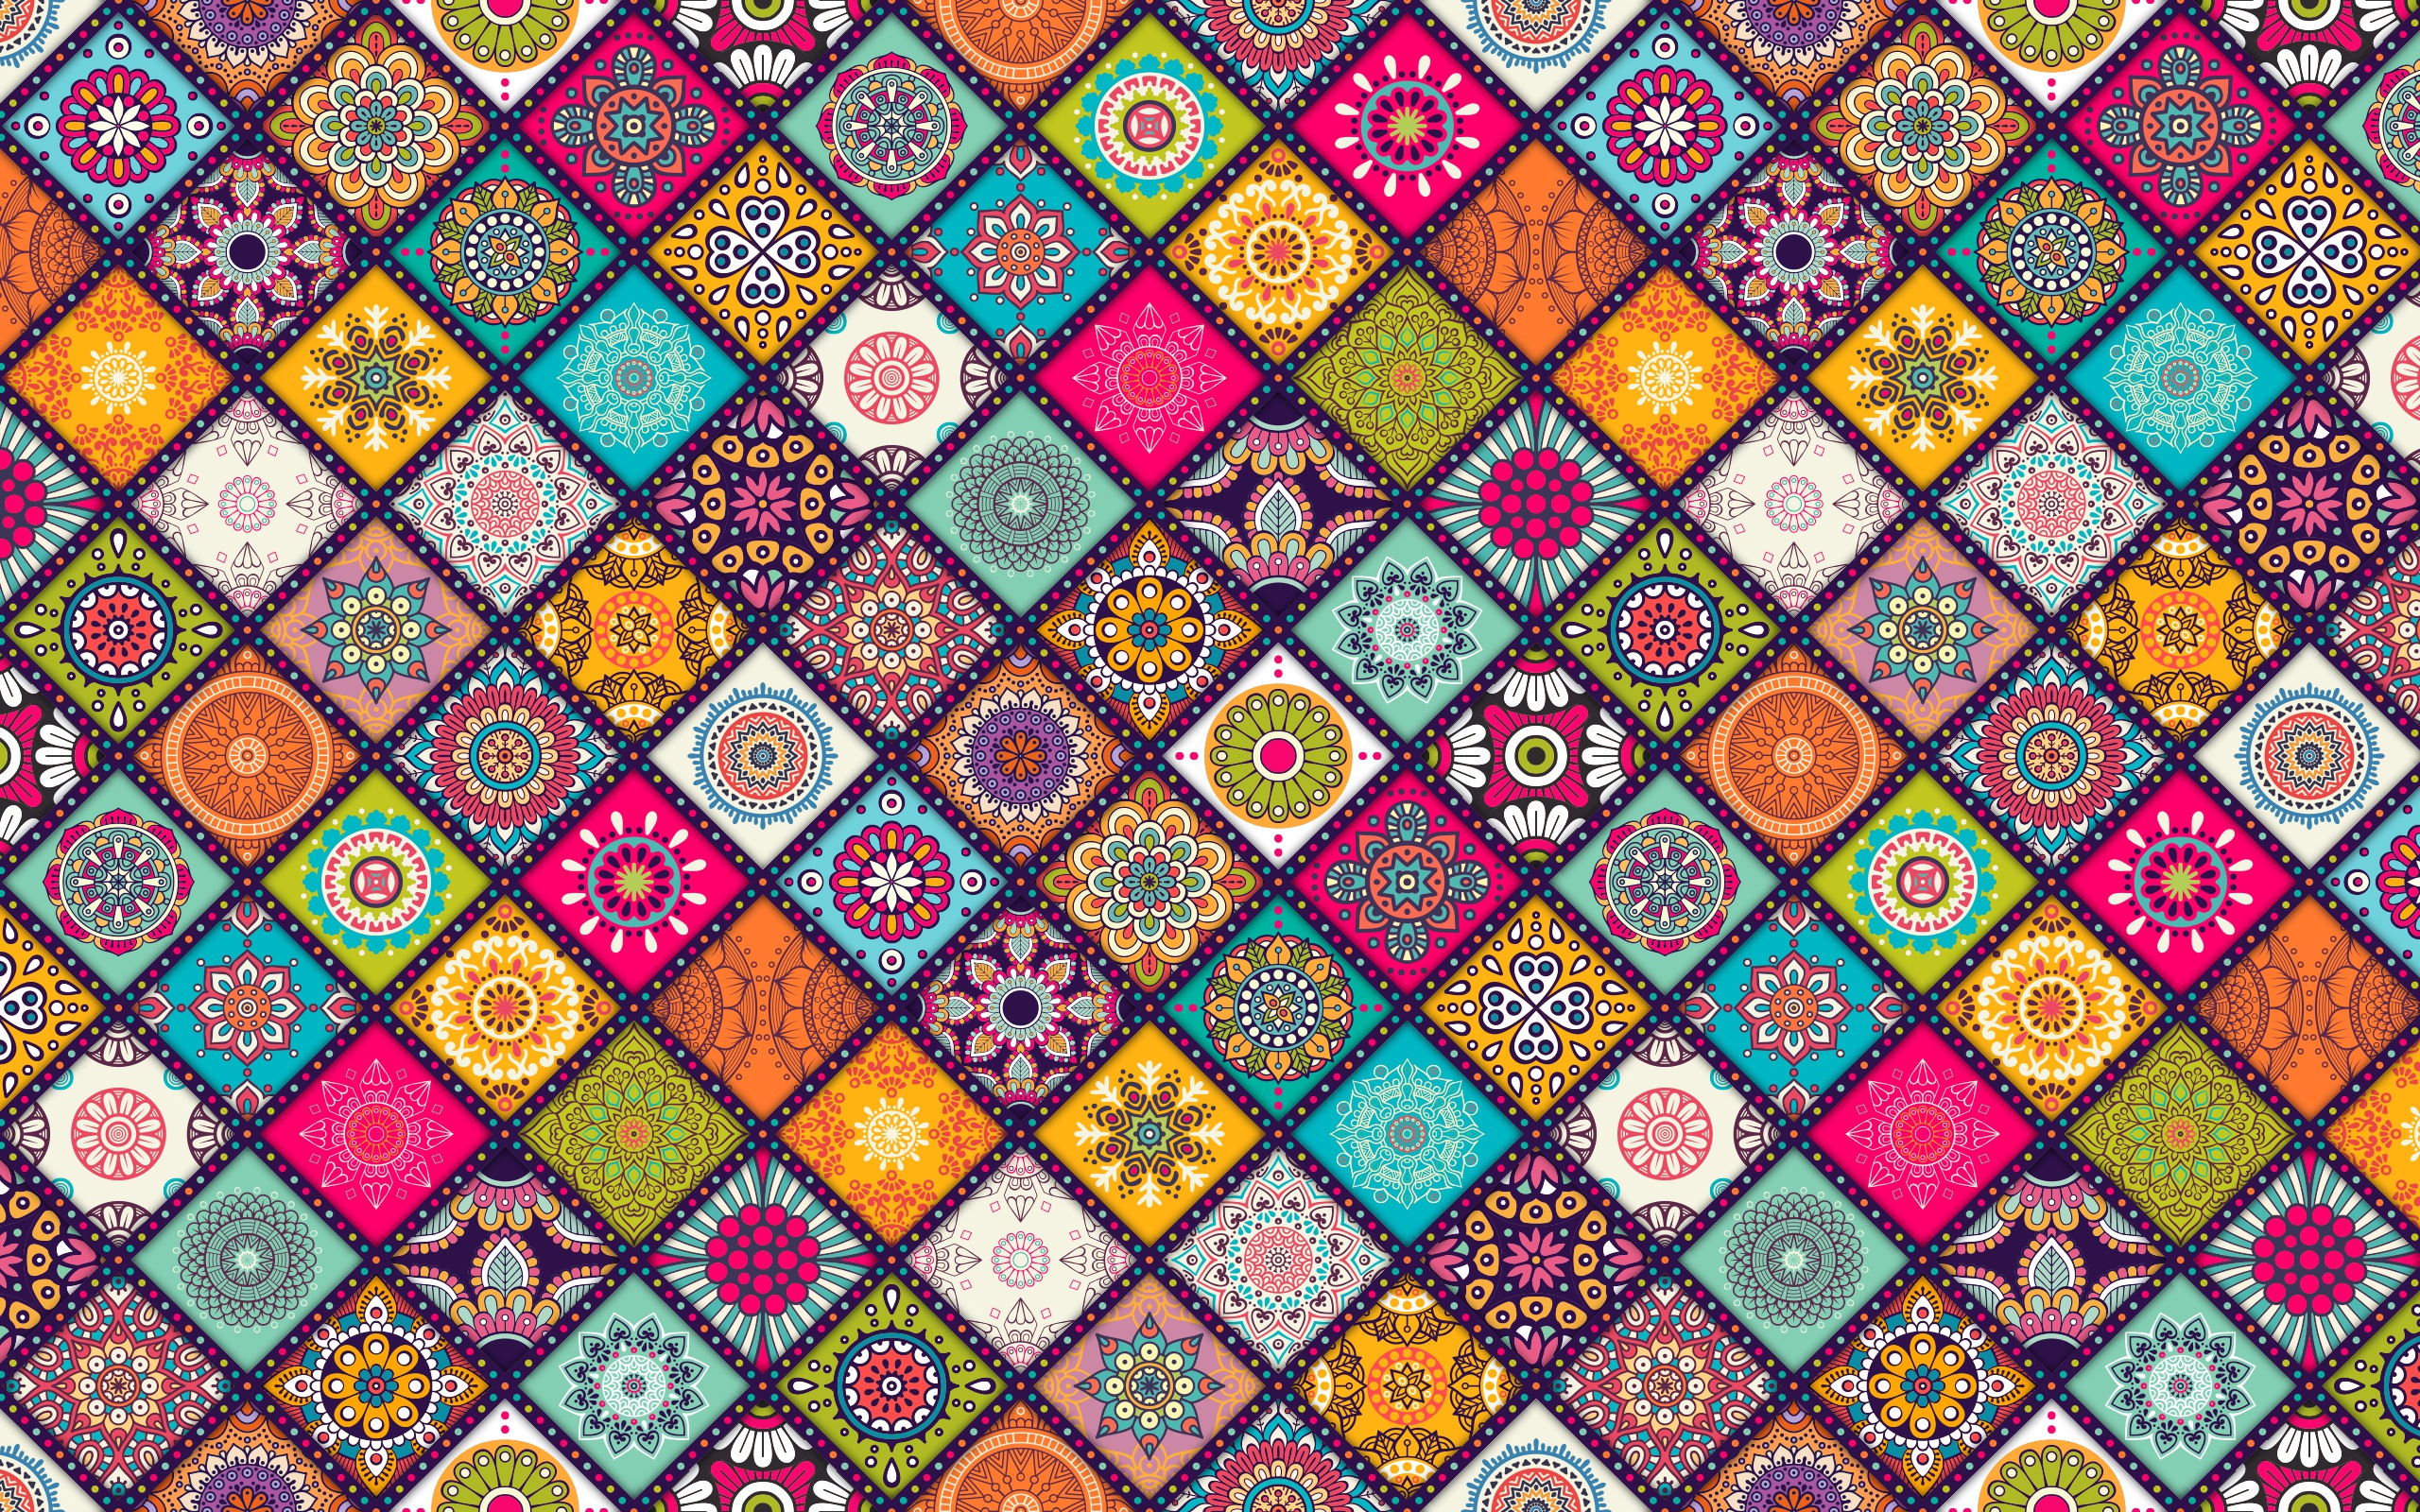 Pattern pictures. Пэчворк,узбекский орнамент. Бразилия национальные узоры паттерны. Цветные узоры. Яркие узоры.